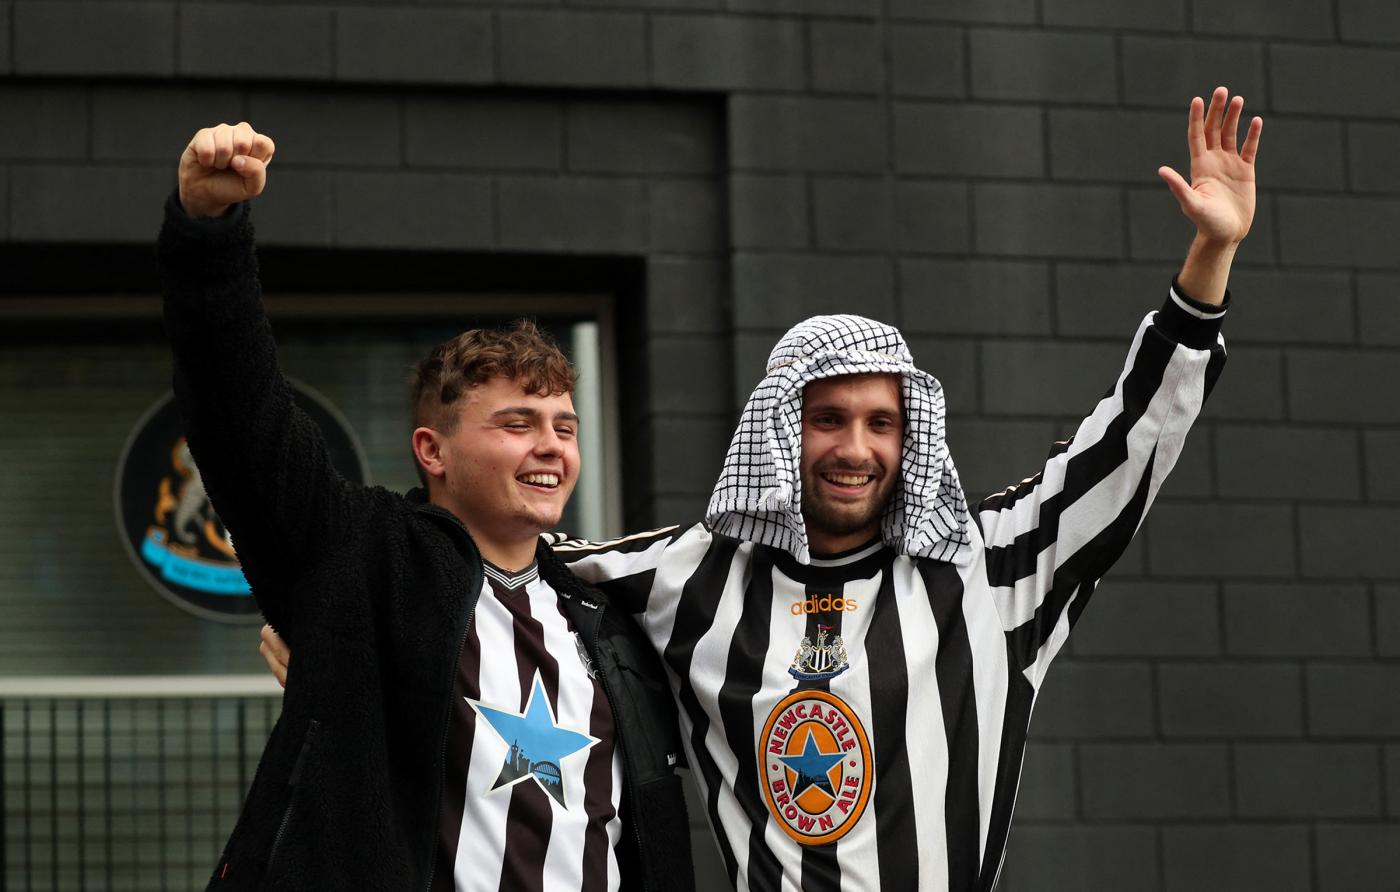 بعد از رسمی شدن خرید باشگاه نیوکاسل انگلیس توسط ولیعهد عربستان سعودی، انتقادها نسبت به اعدام و گردن زدن در این کشور افزایش یافته است